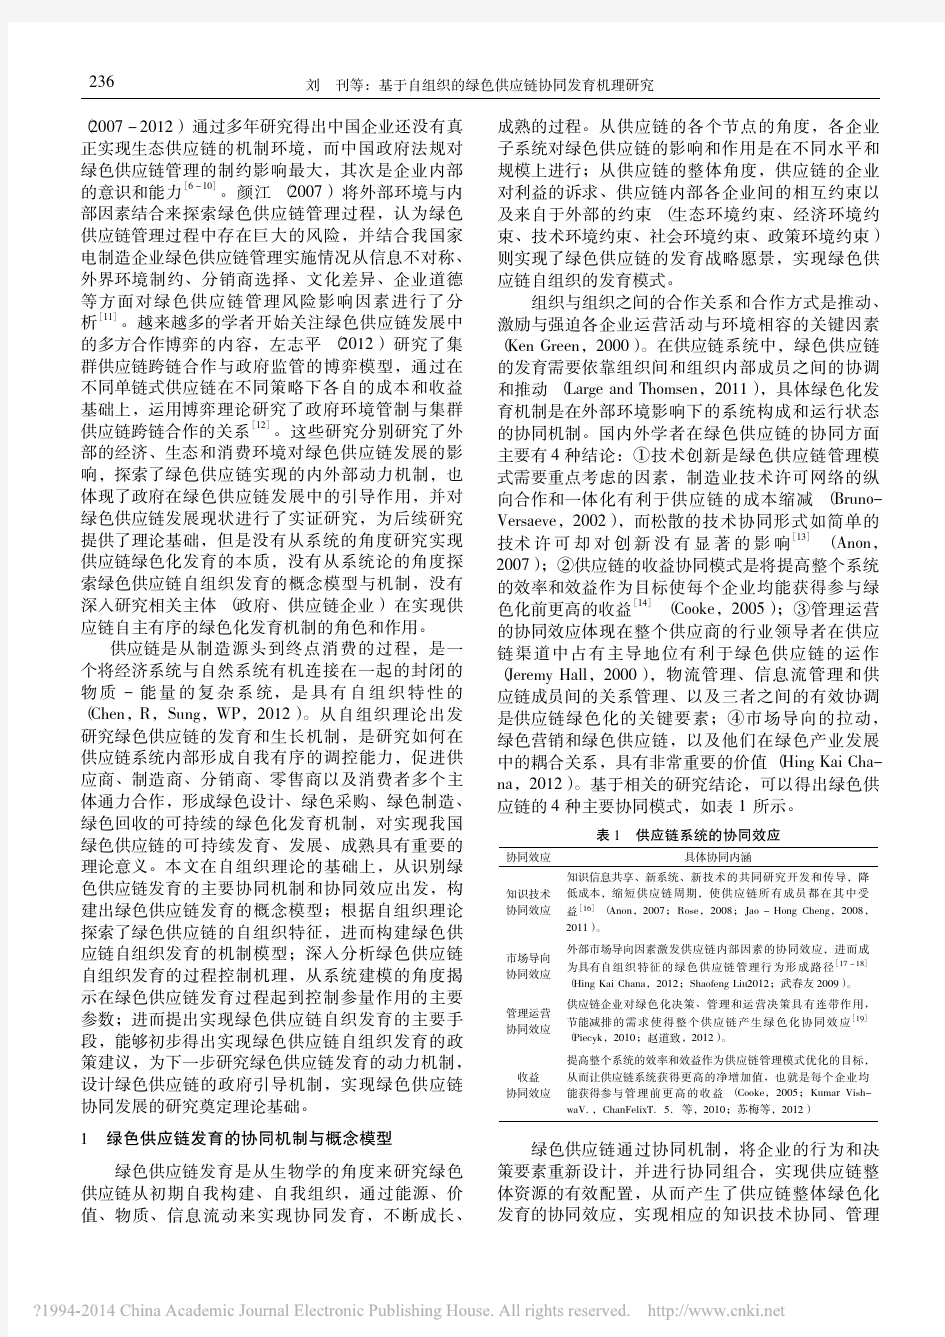 iData_基于自组织的绿色供应链协同发育机理研究_刘刊